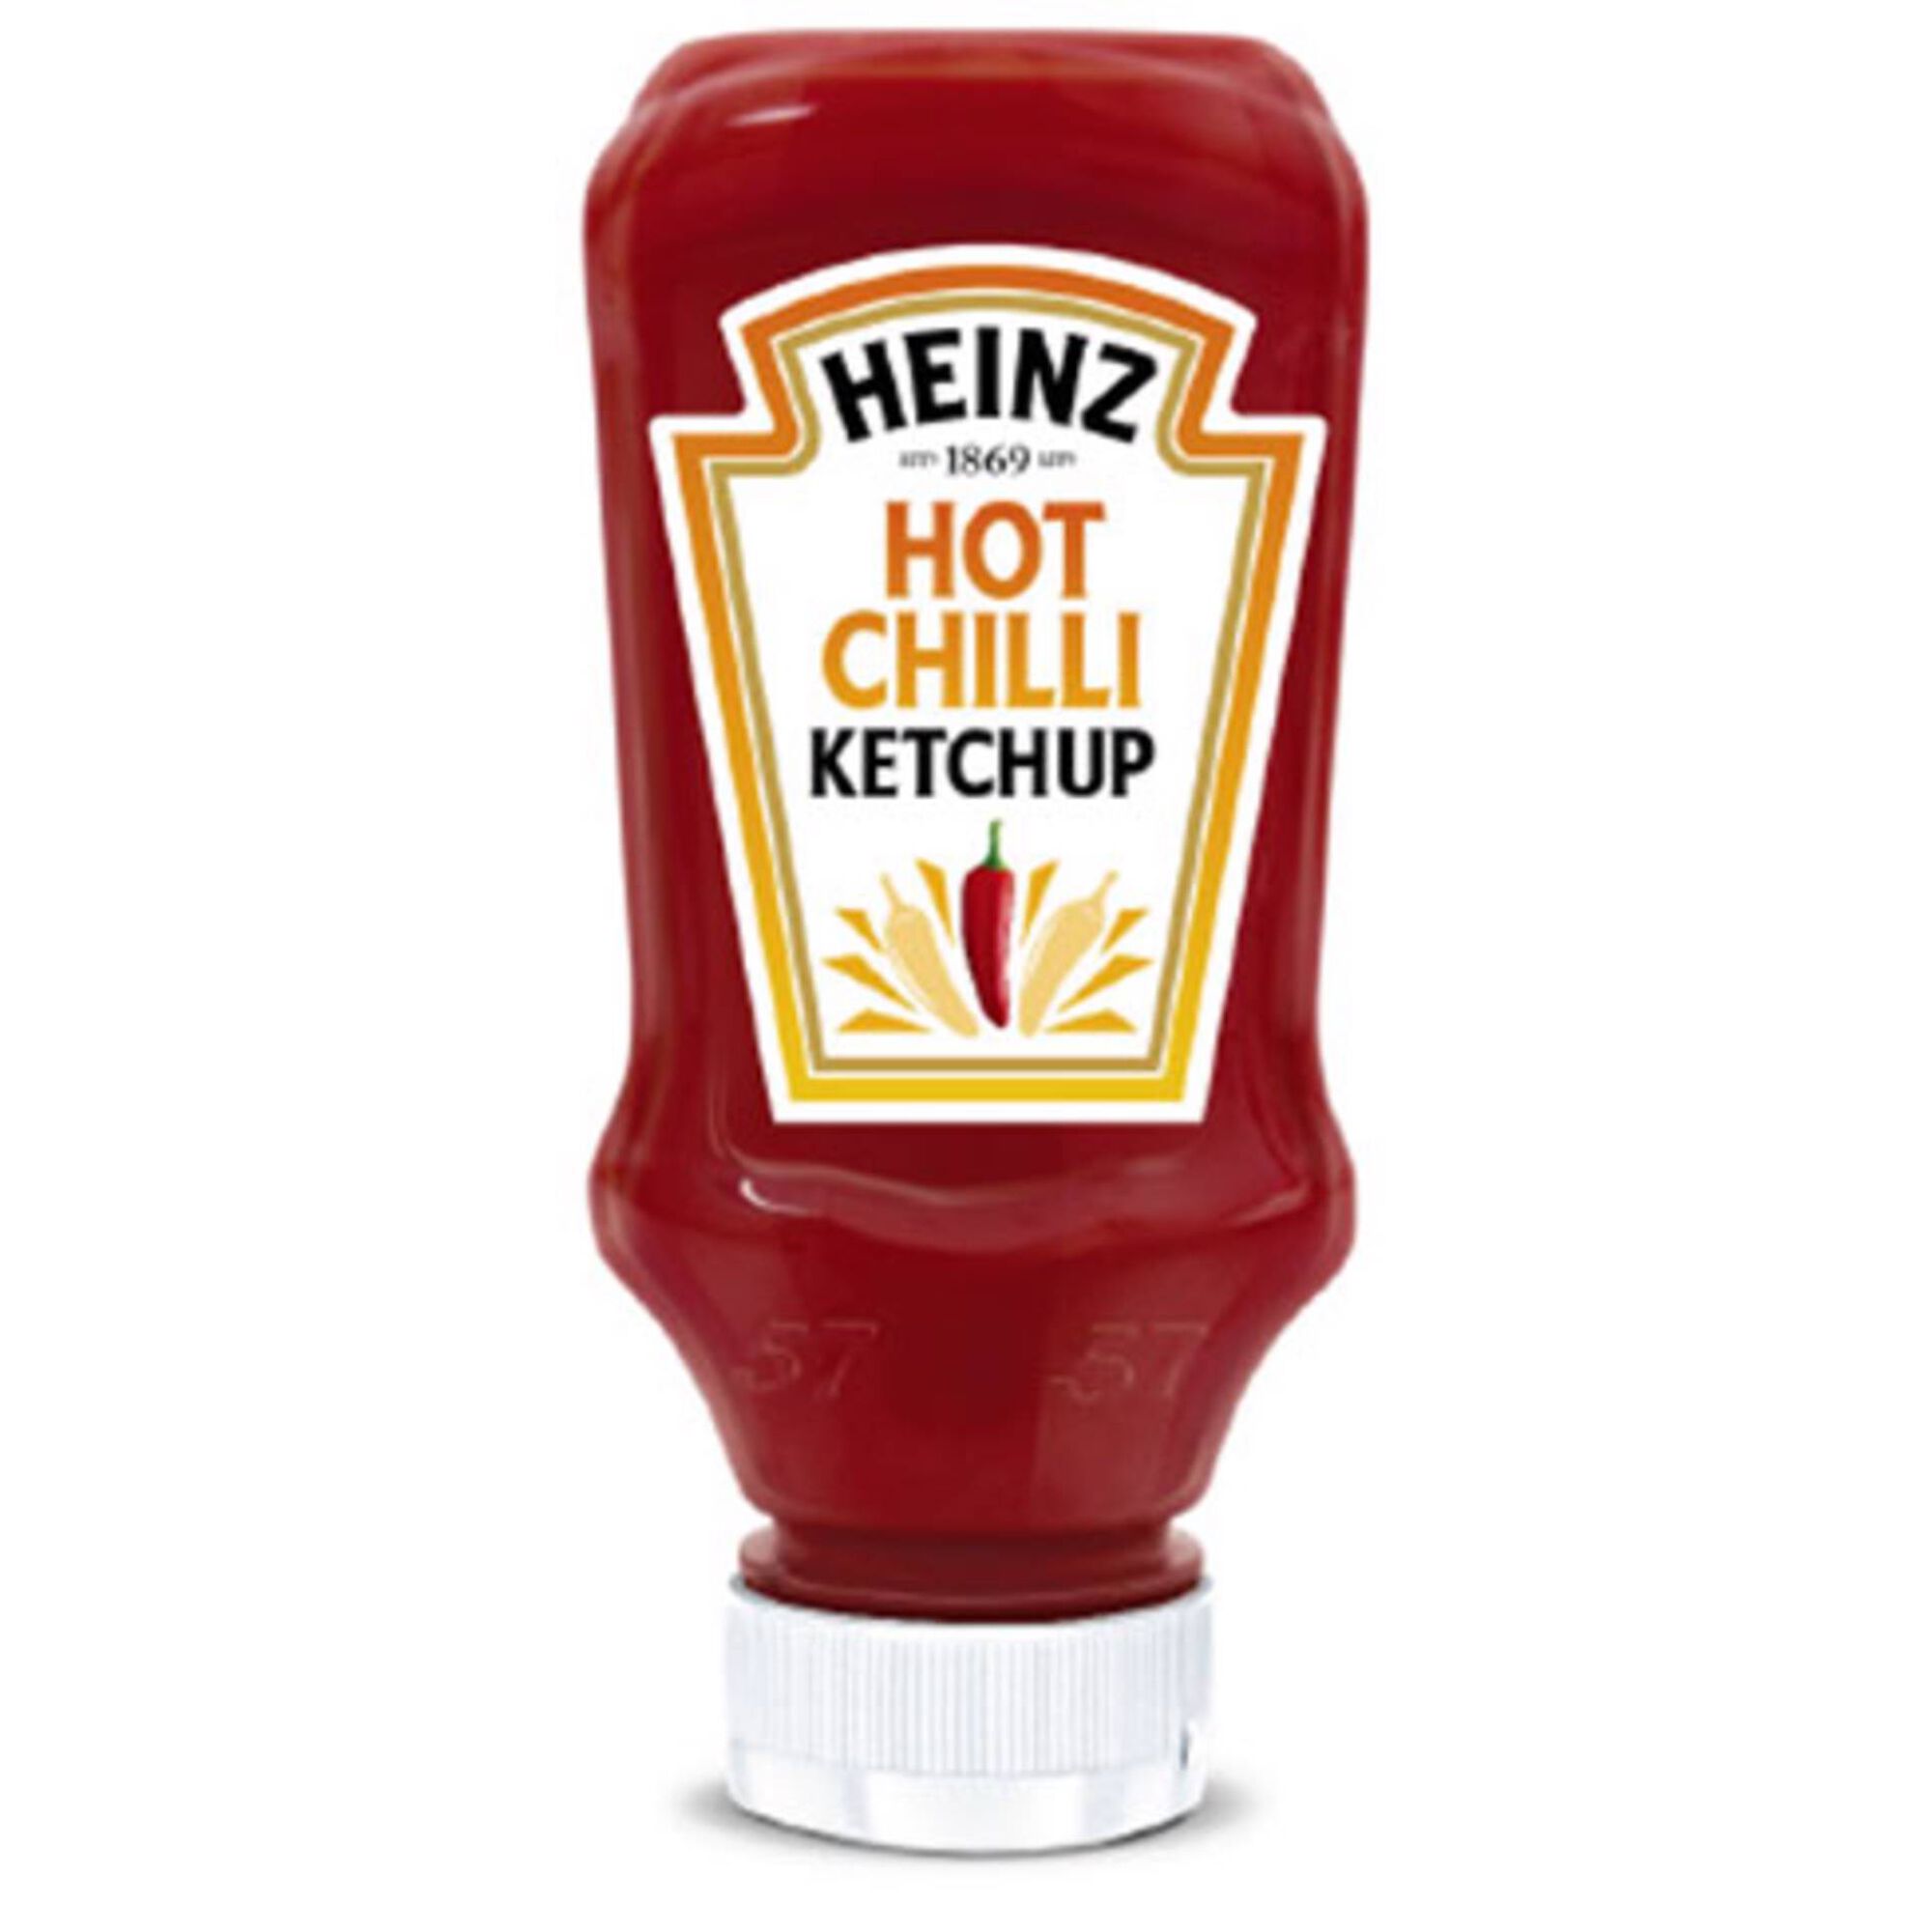 Ketchup Hot Chili Top Down